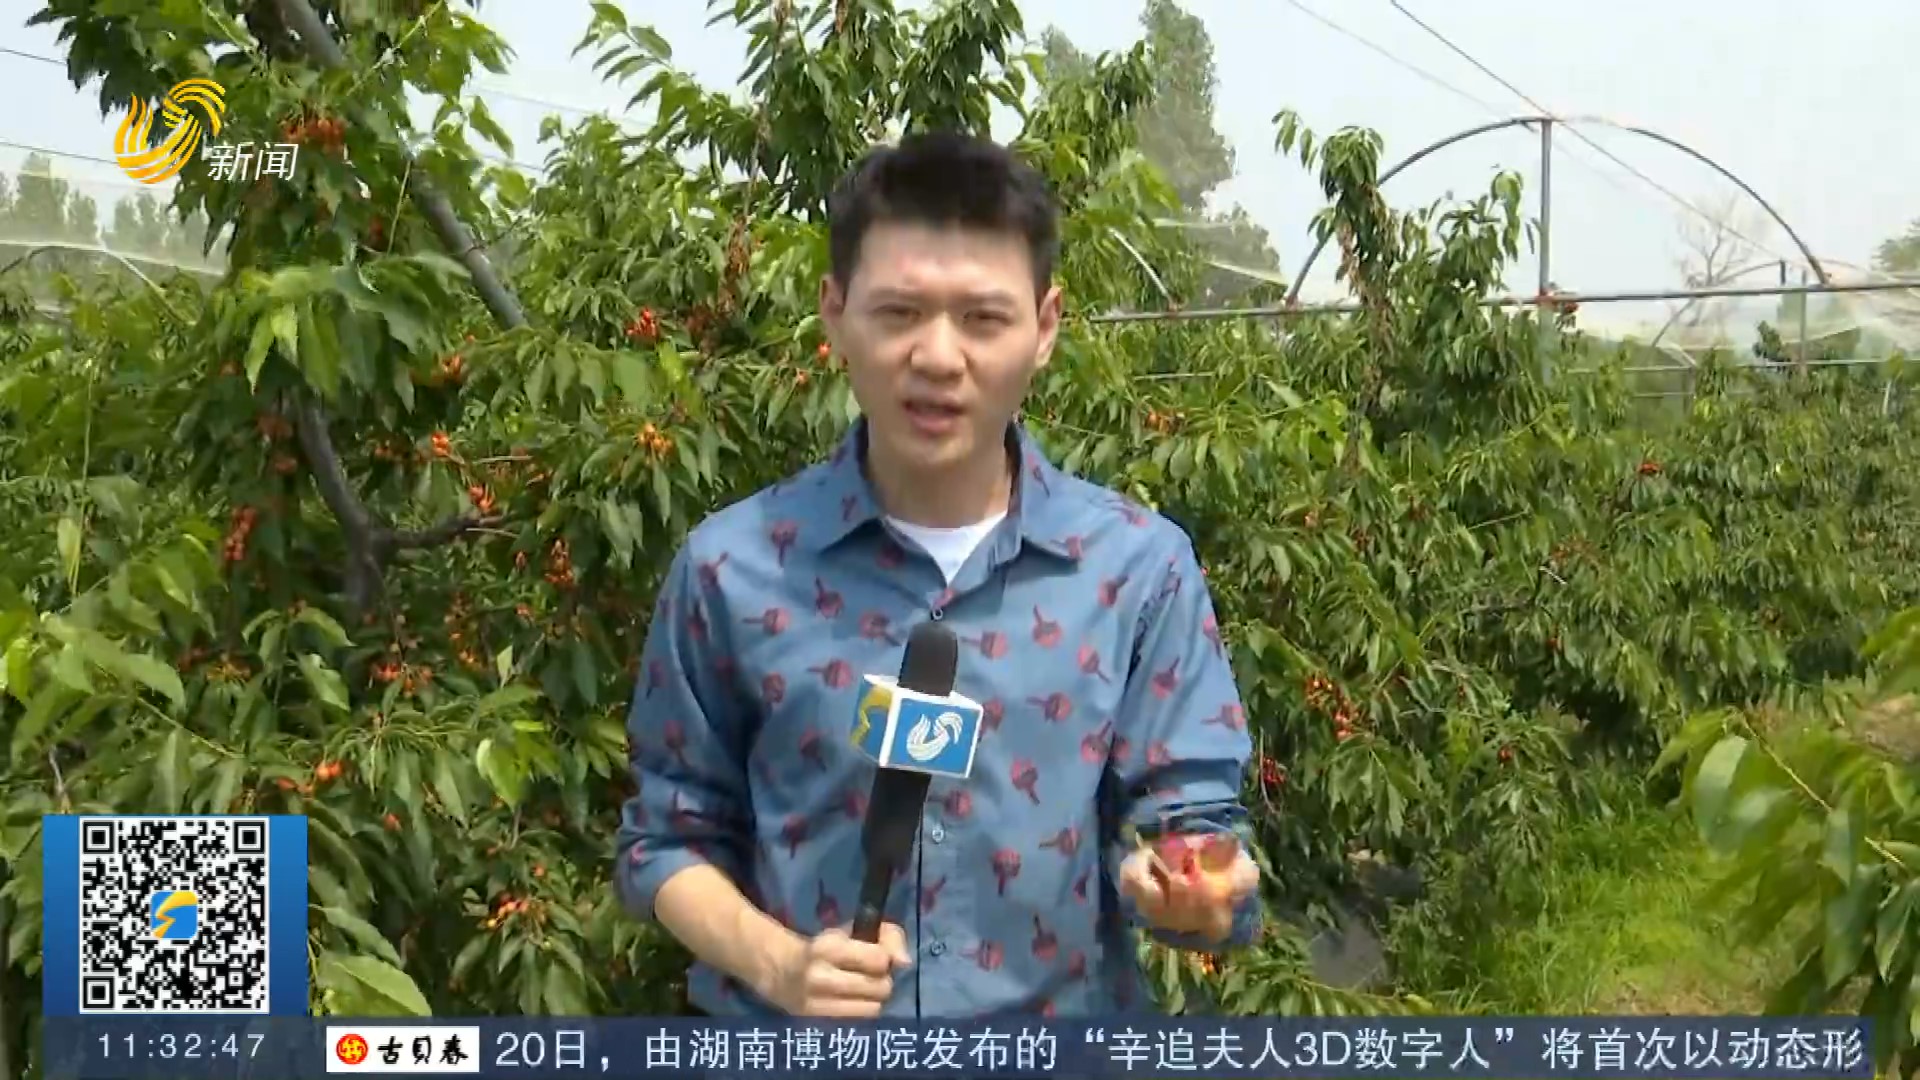 【打造乡村振兴齐鲁样板】十米不同树 育种上百个 记者探访省内最大樱桃育种基地